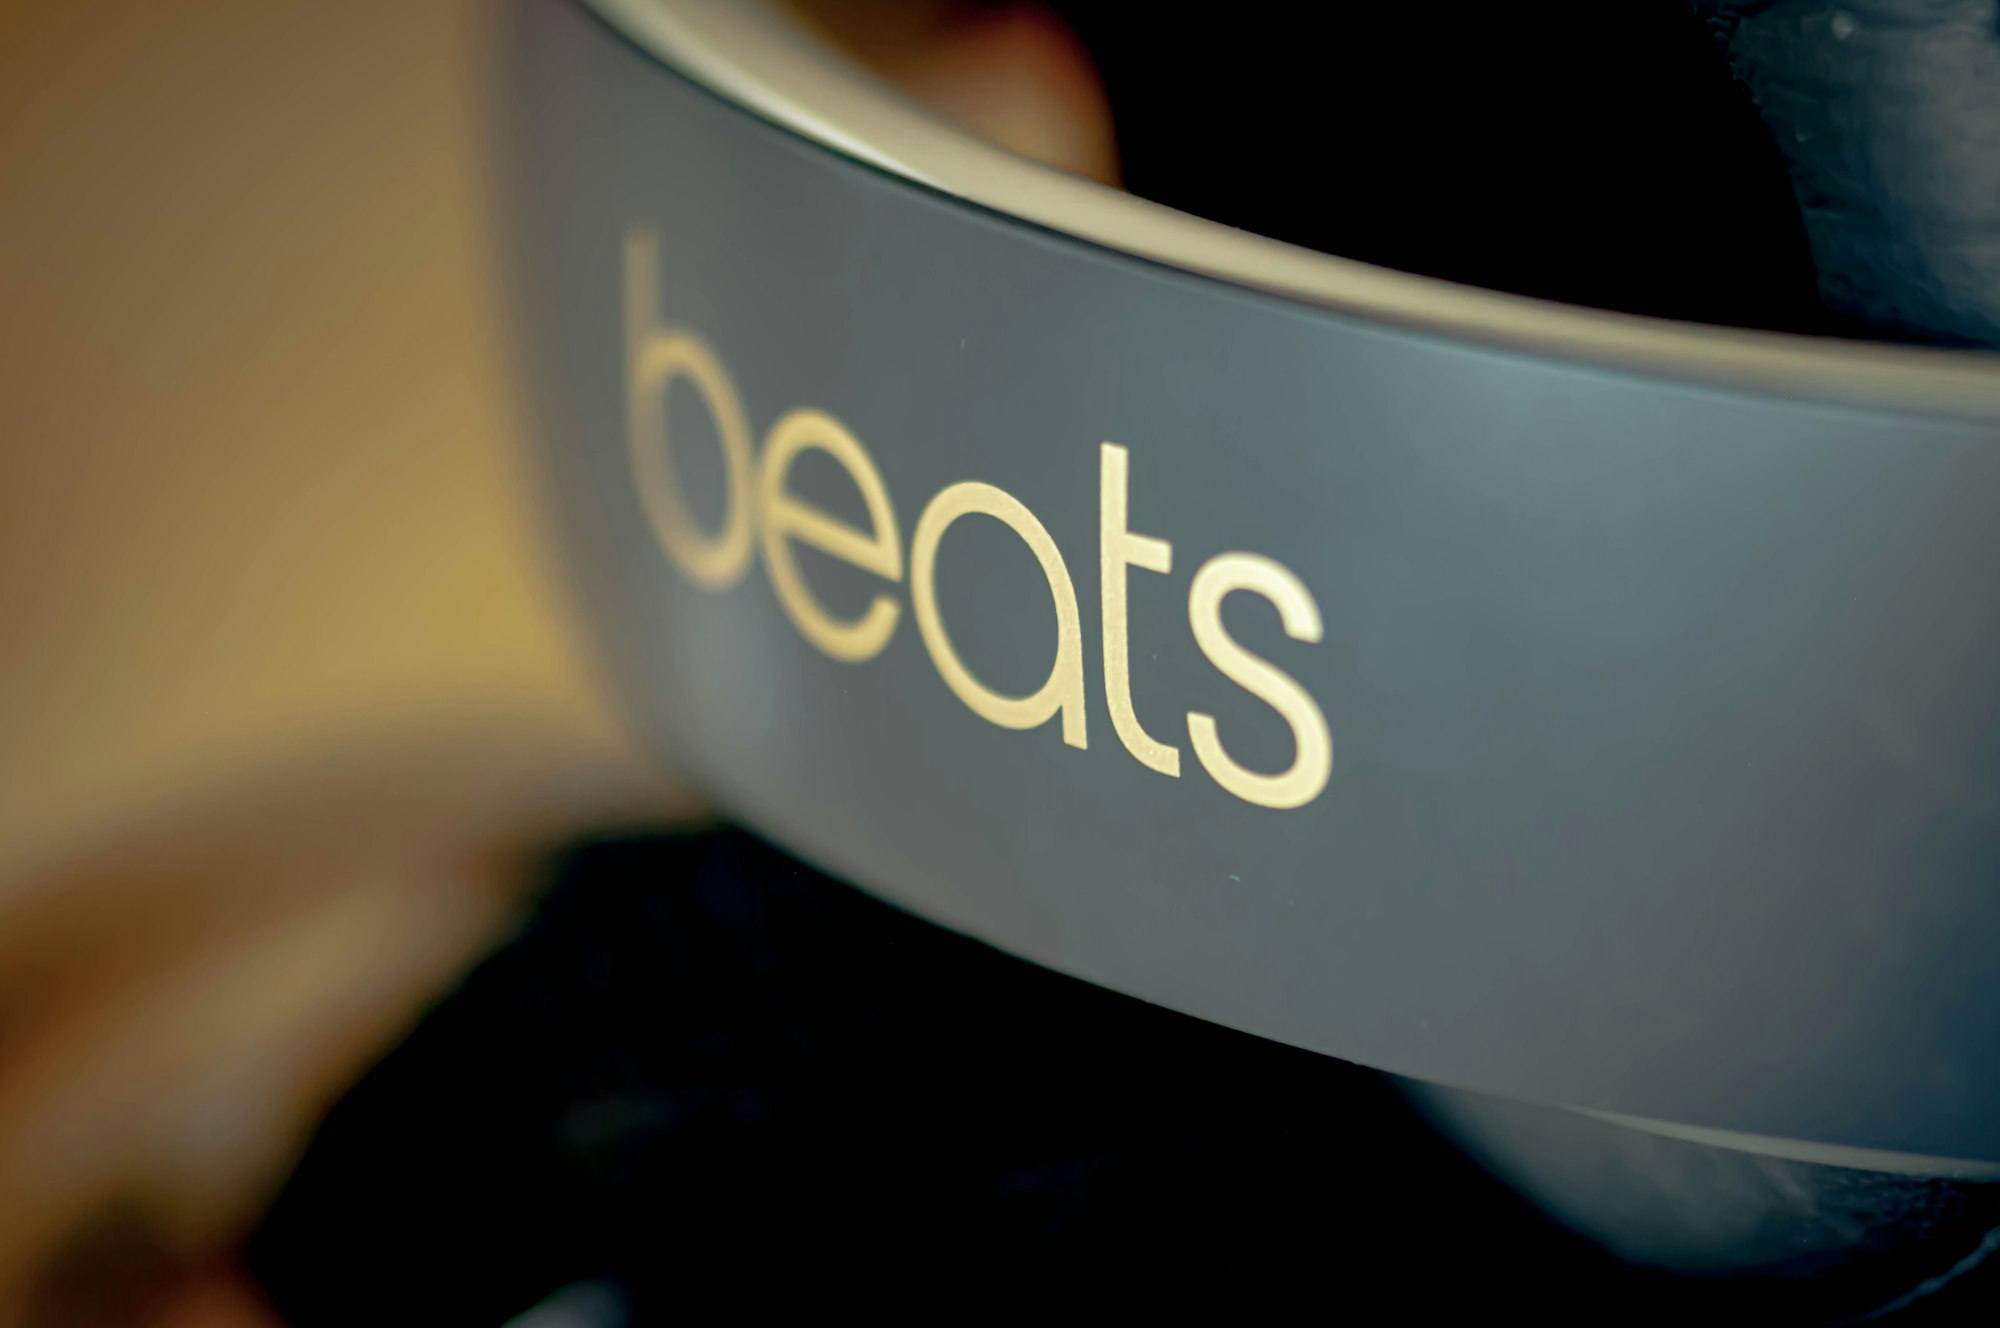 Novos headphones da Beats a caminho?! post image